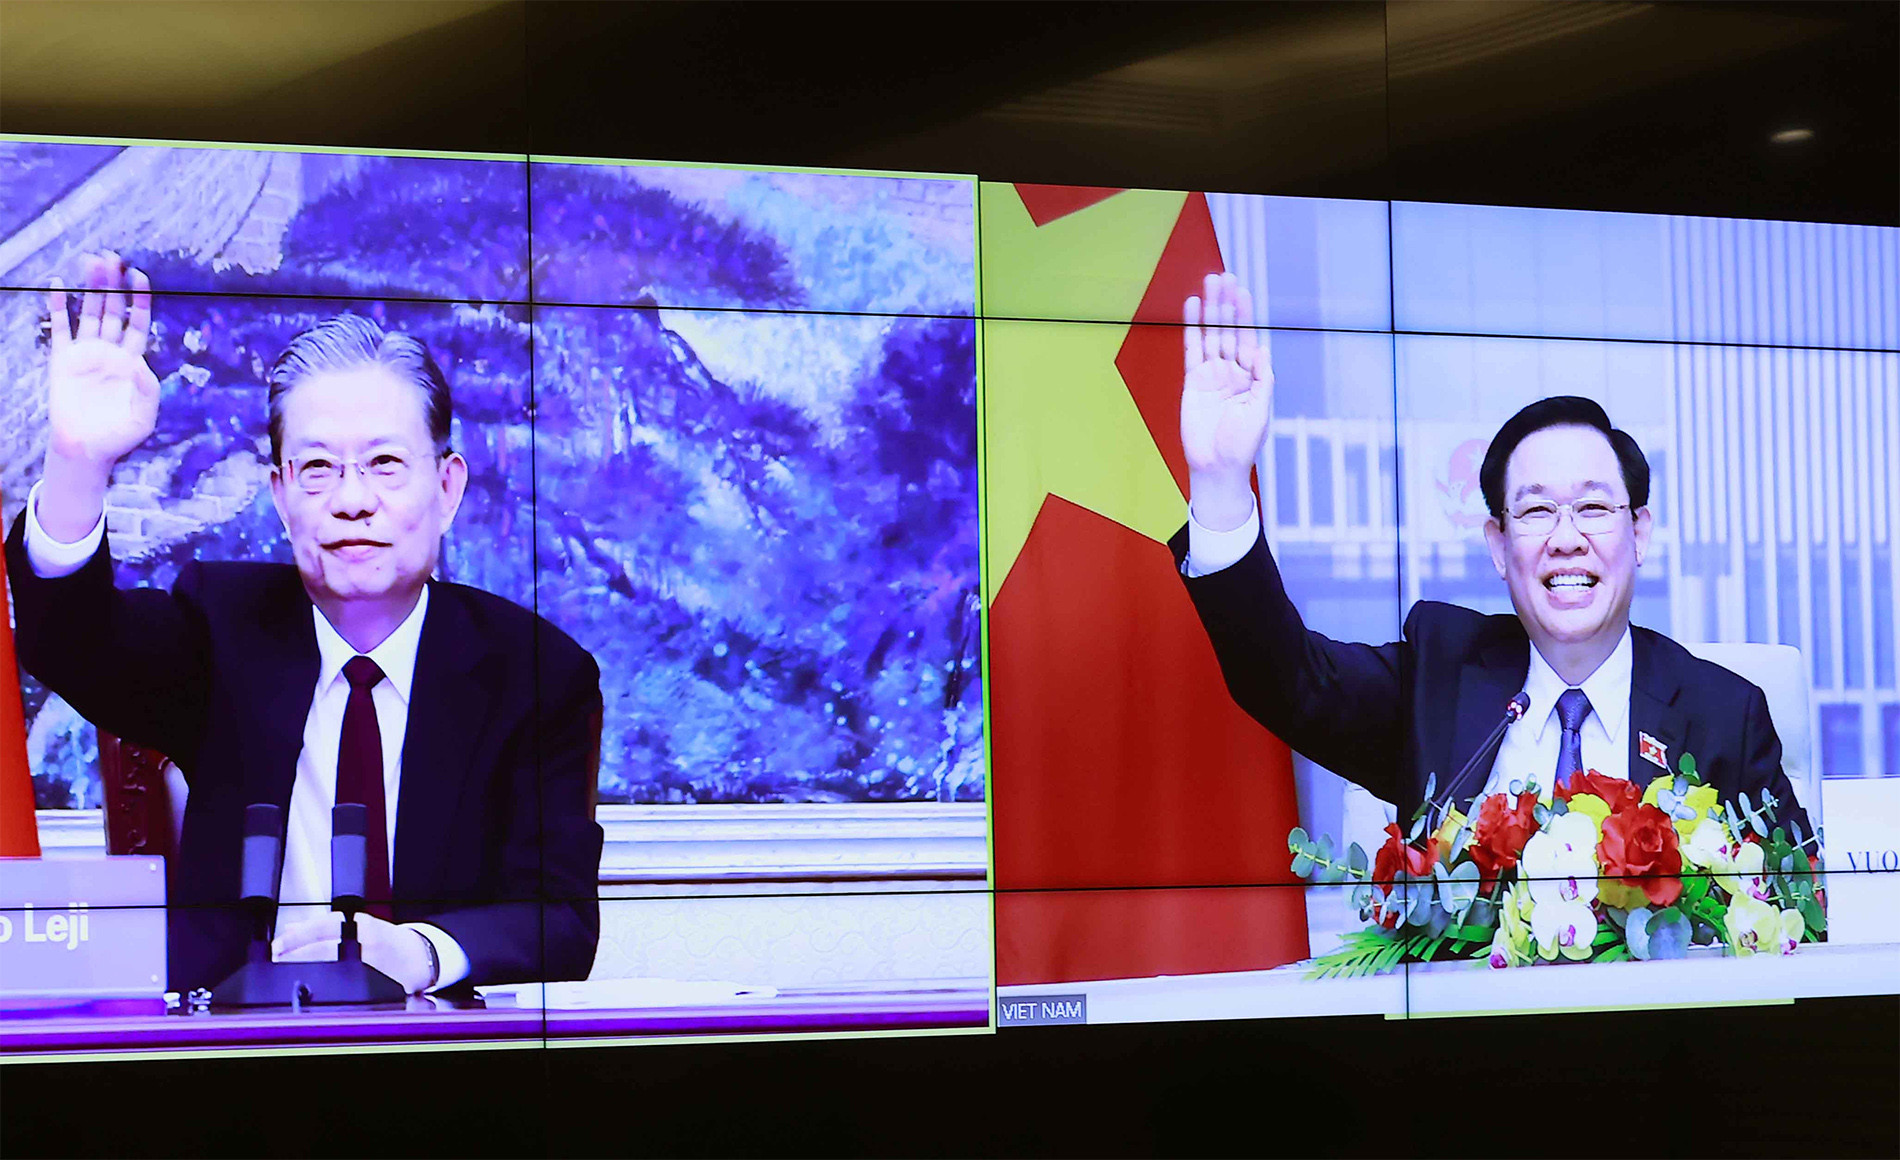 View - Tổng Bí thư, Chủ tịch Trung Quốc thăm Việt Nam: Lợi ích cho nhân dân 2 nước